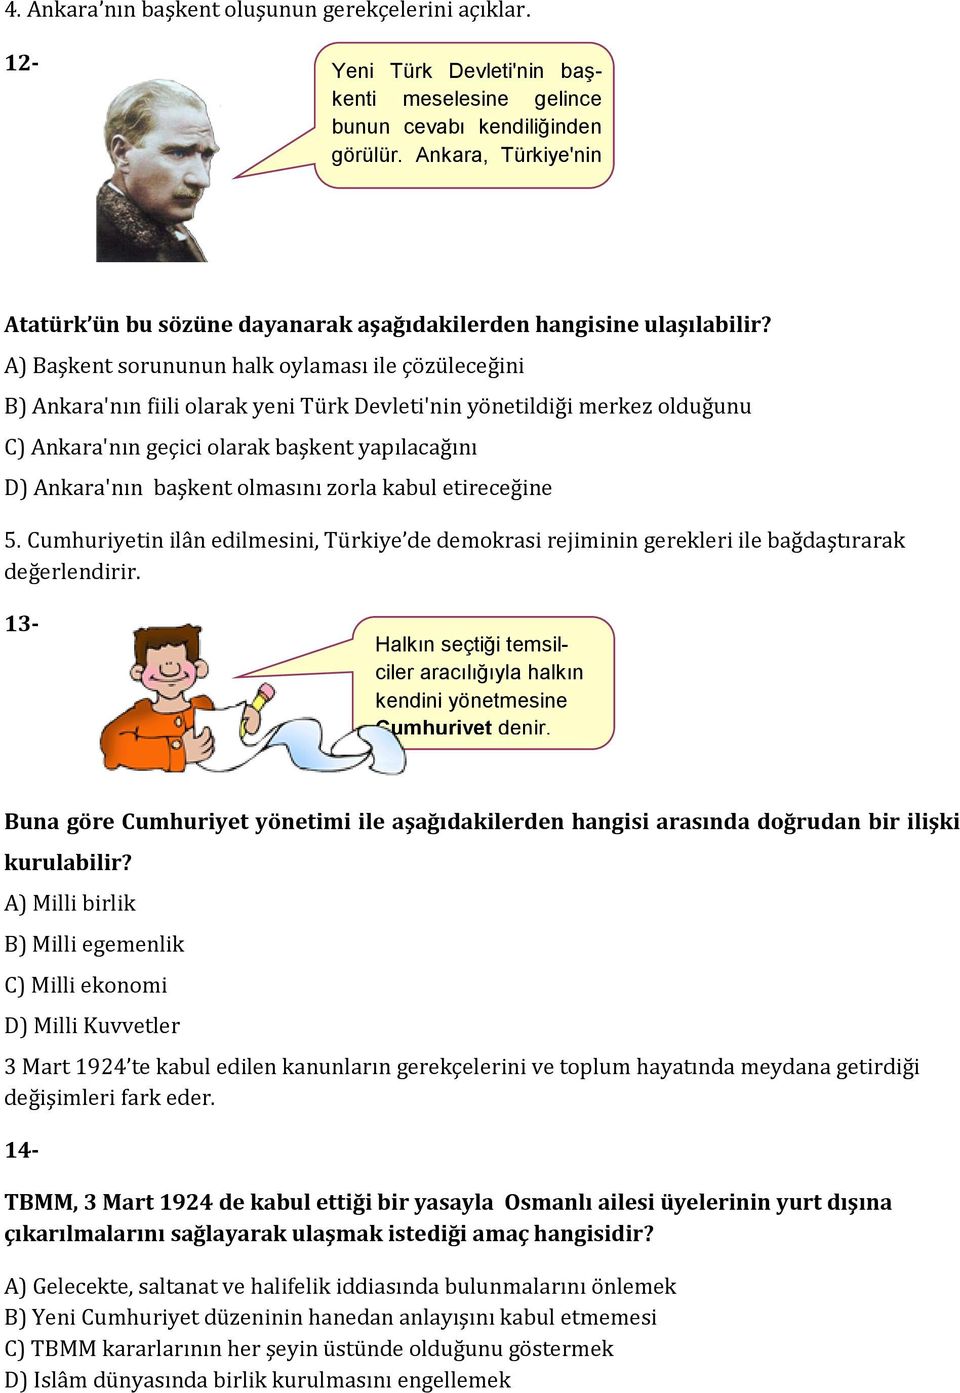 A) Başkent sorununun halk oylaması ile çözüleceğini B) Ankara'nın fiili olarak yeni Türk Devleti'nin yönetildiği merkez olduğunu C) Ankara'nın geçici olarak başkent yapılacağını D) Ankara'nın başkent